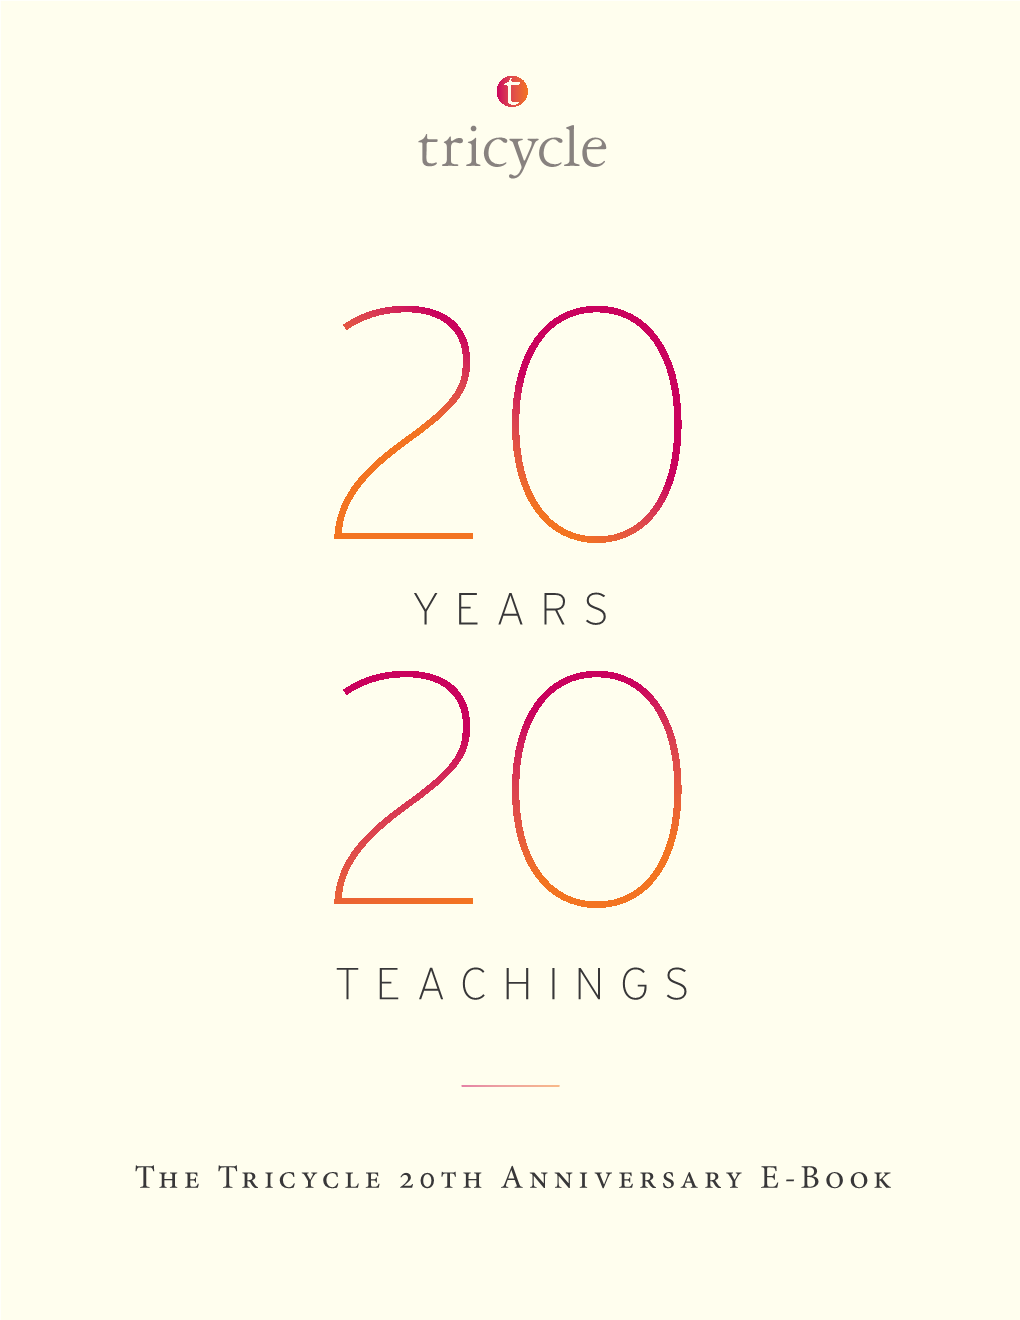 Years Teachings